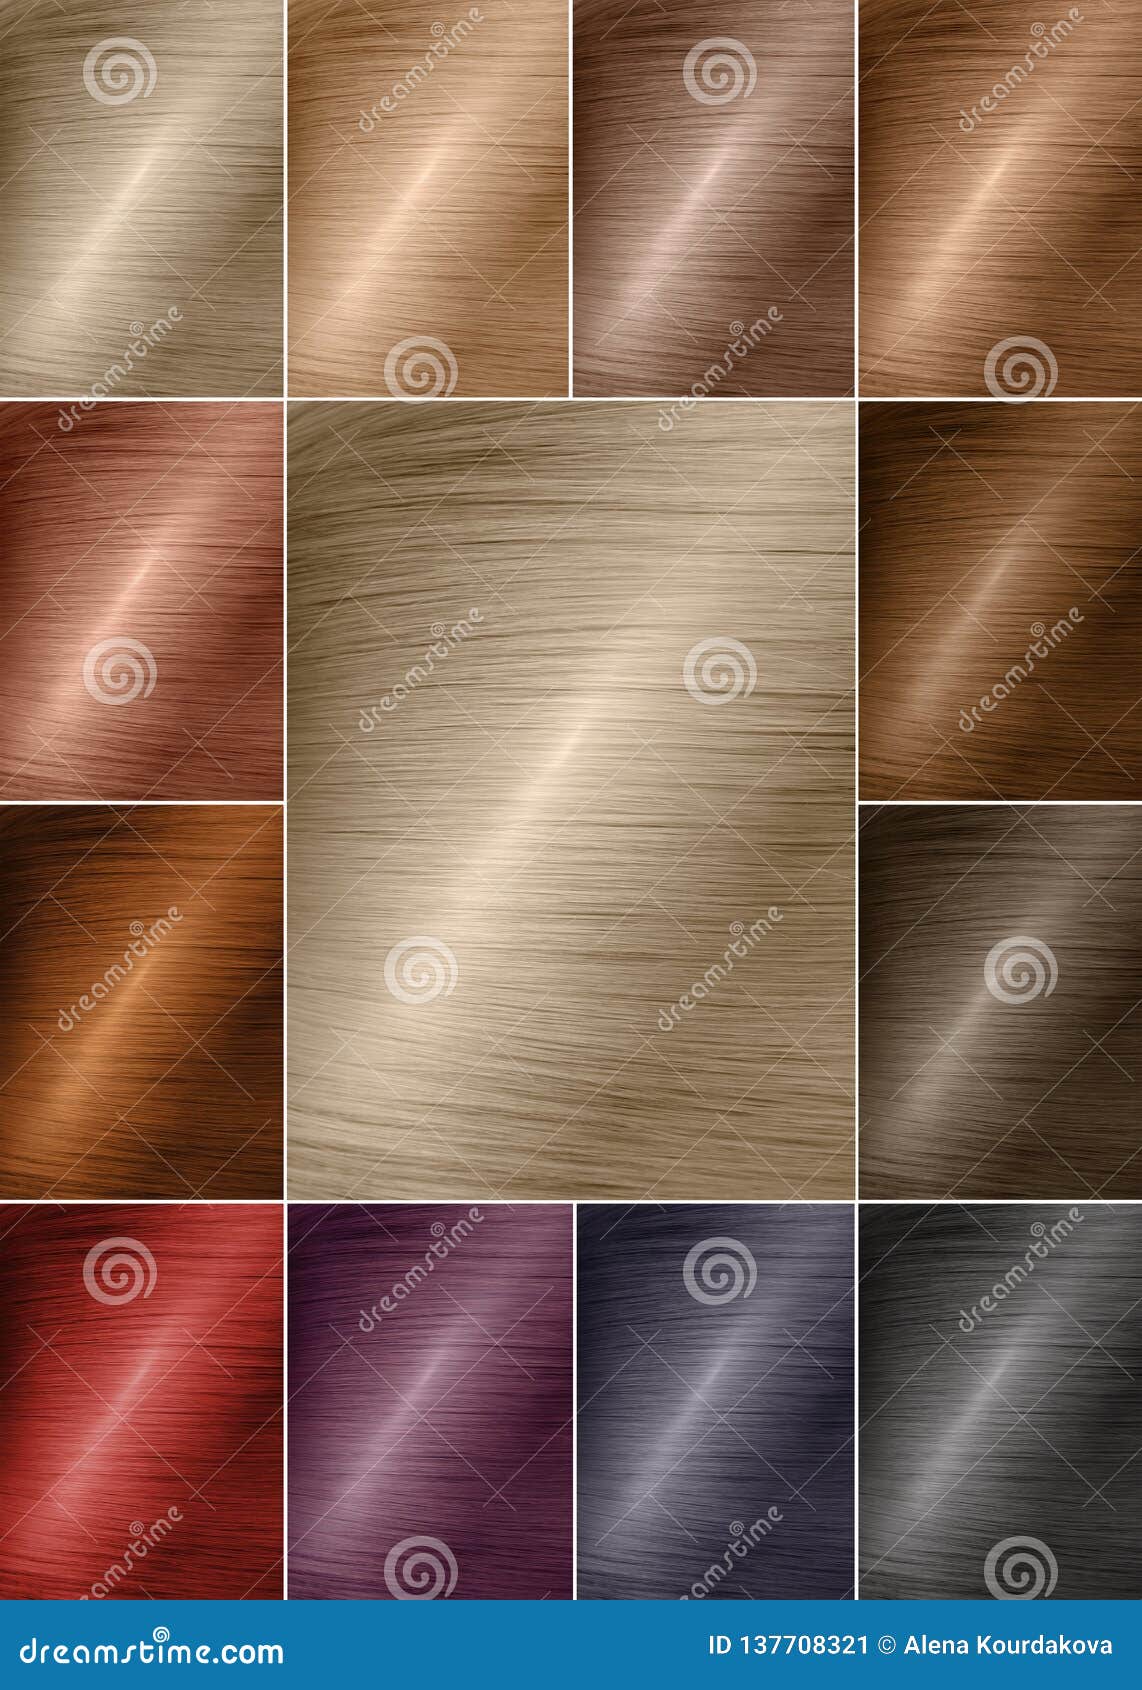 Hair Color Palette Chart